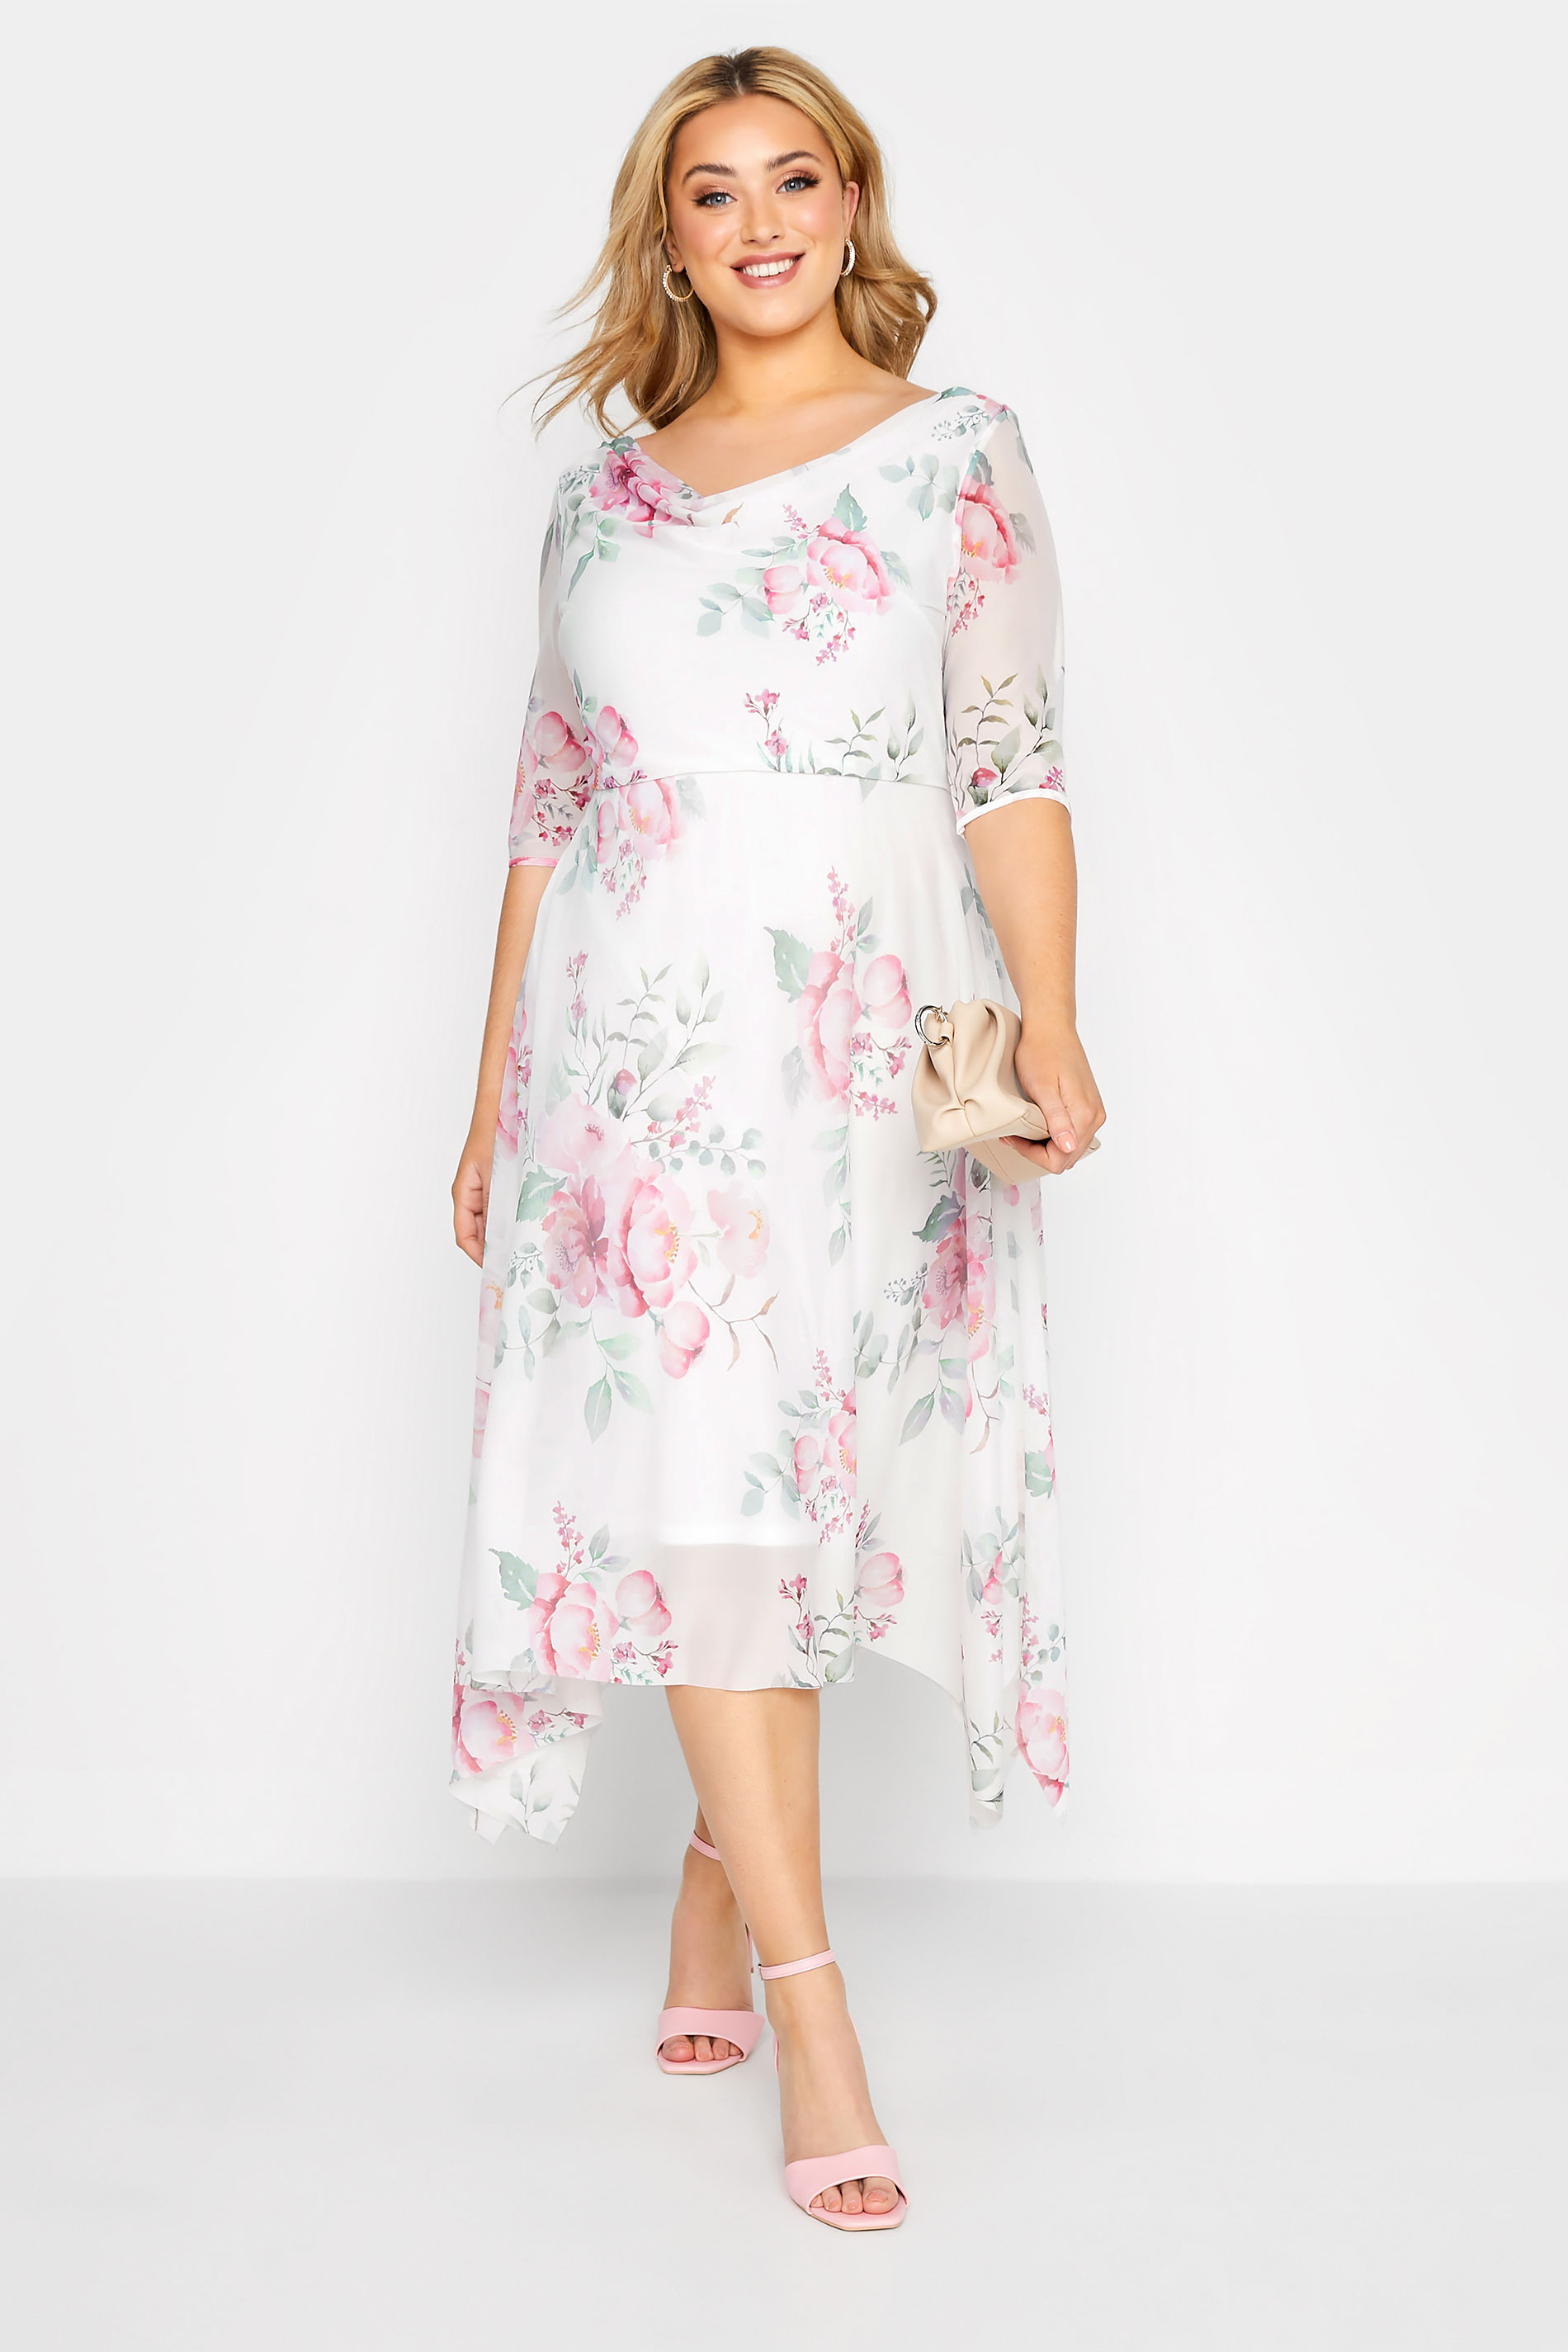 Großen Größen Kleider Großen Größen Florale Kleider | YOURS LONDON Curve White Floral Cowl Dress - XN19295